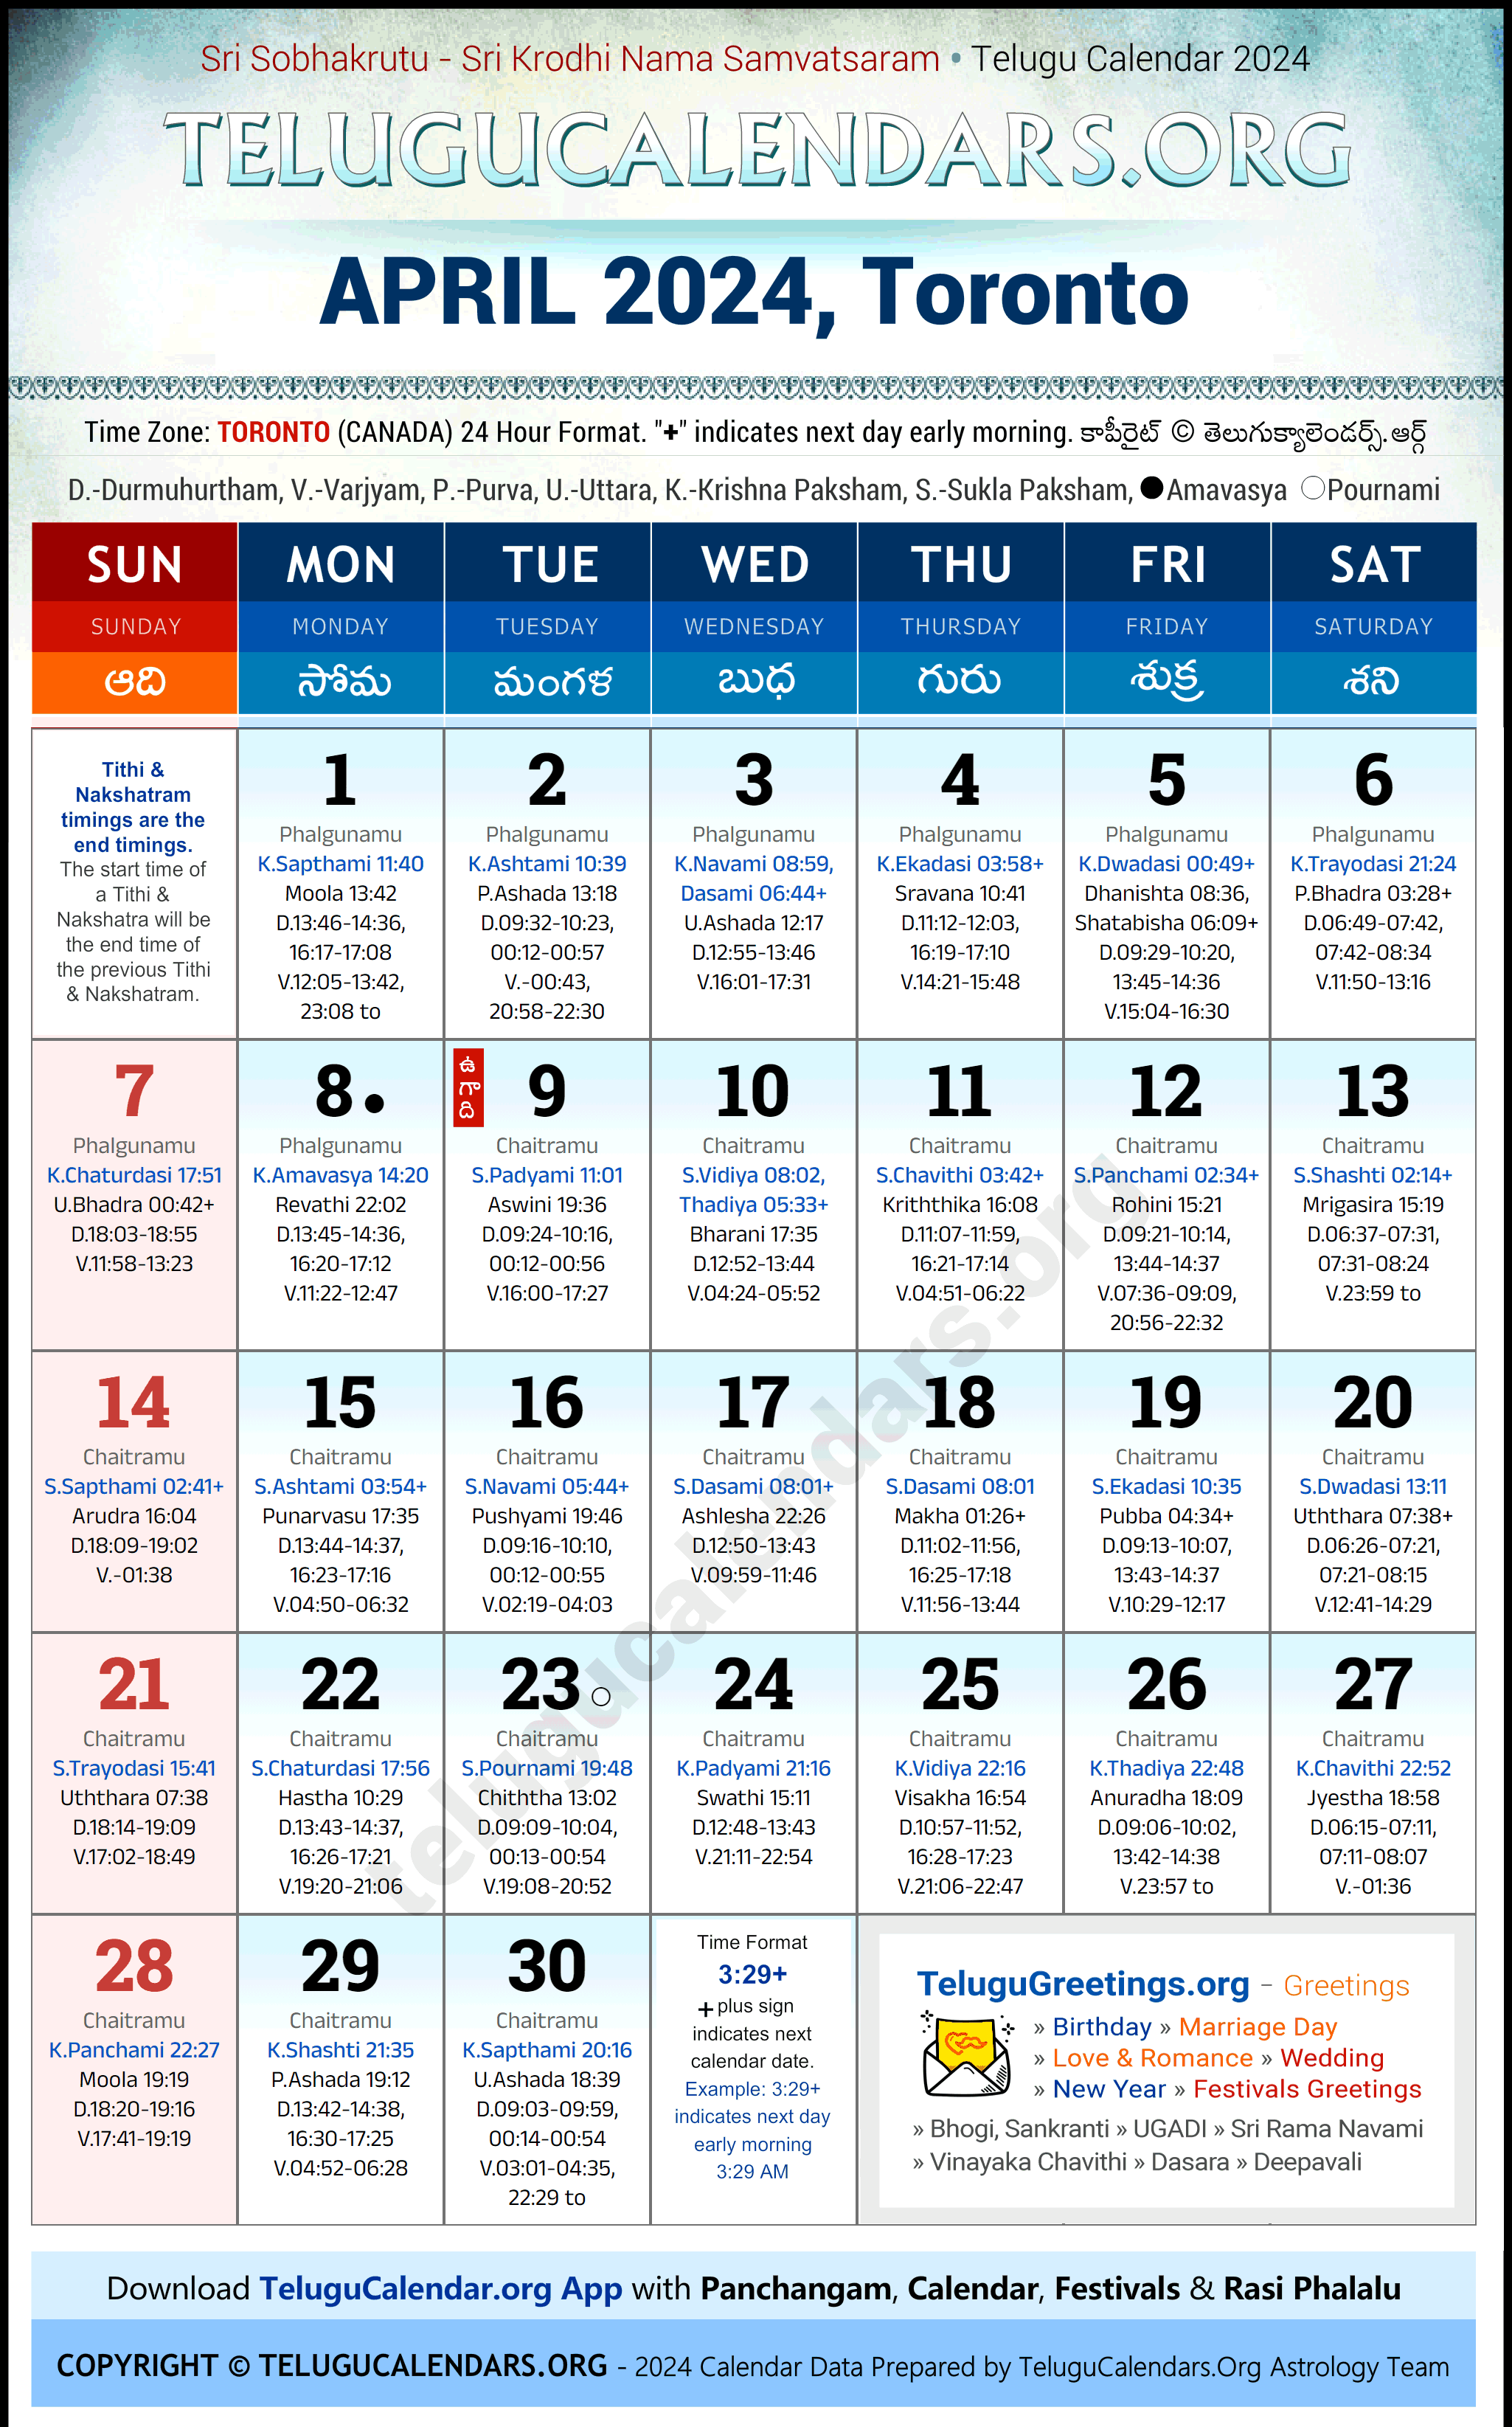 Telugu Calendar 2024 April Festivals for Toronto